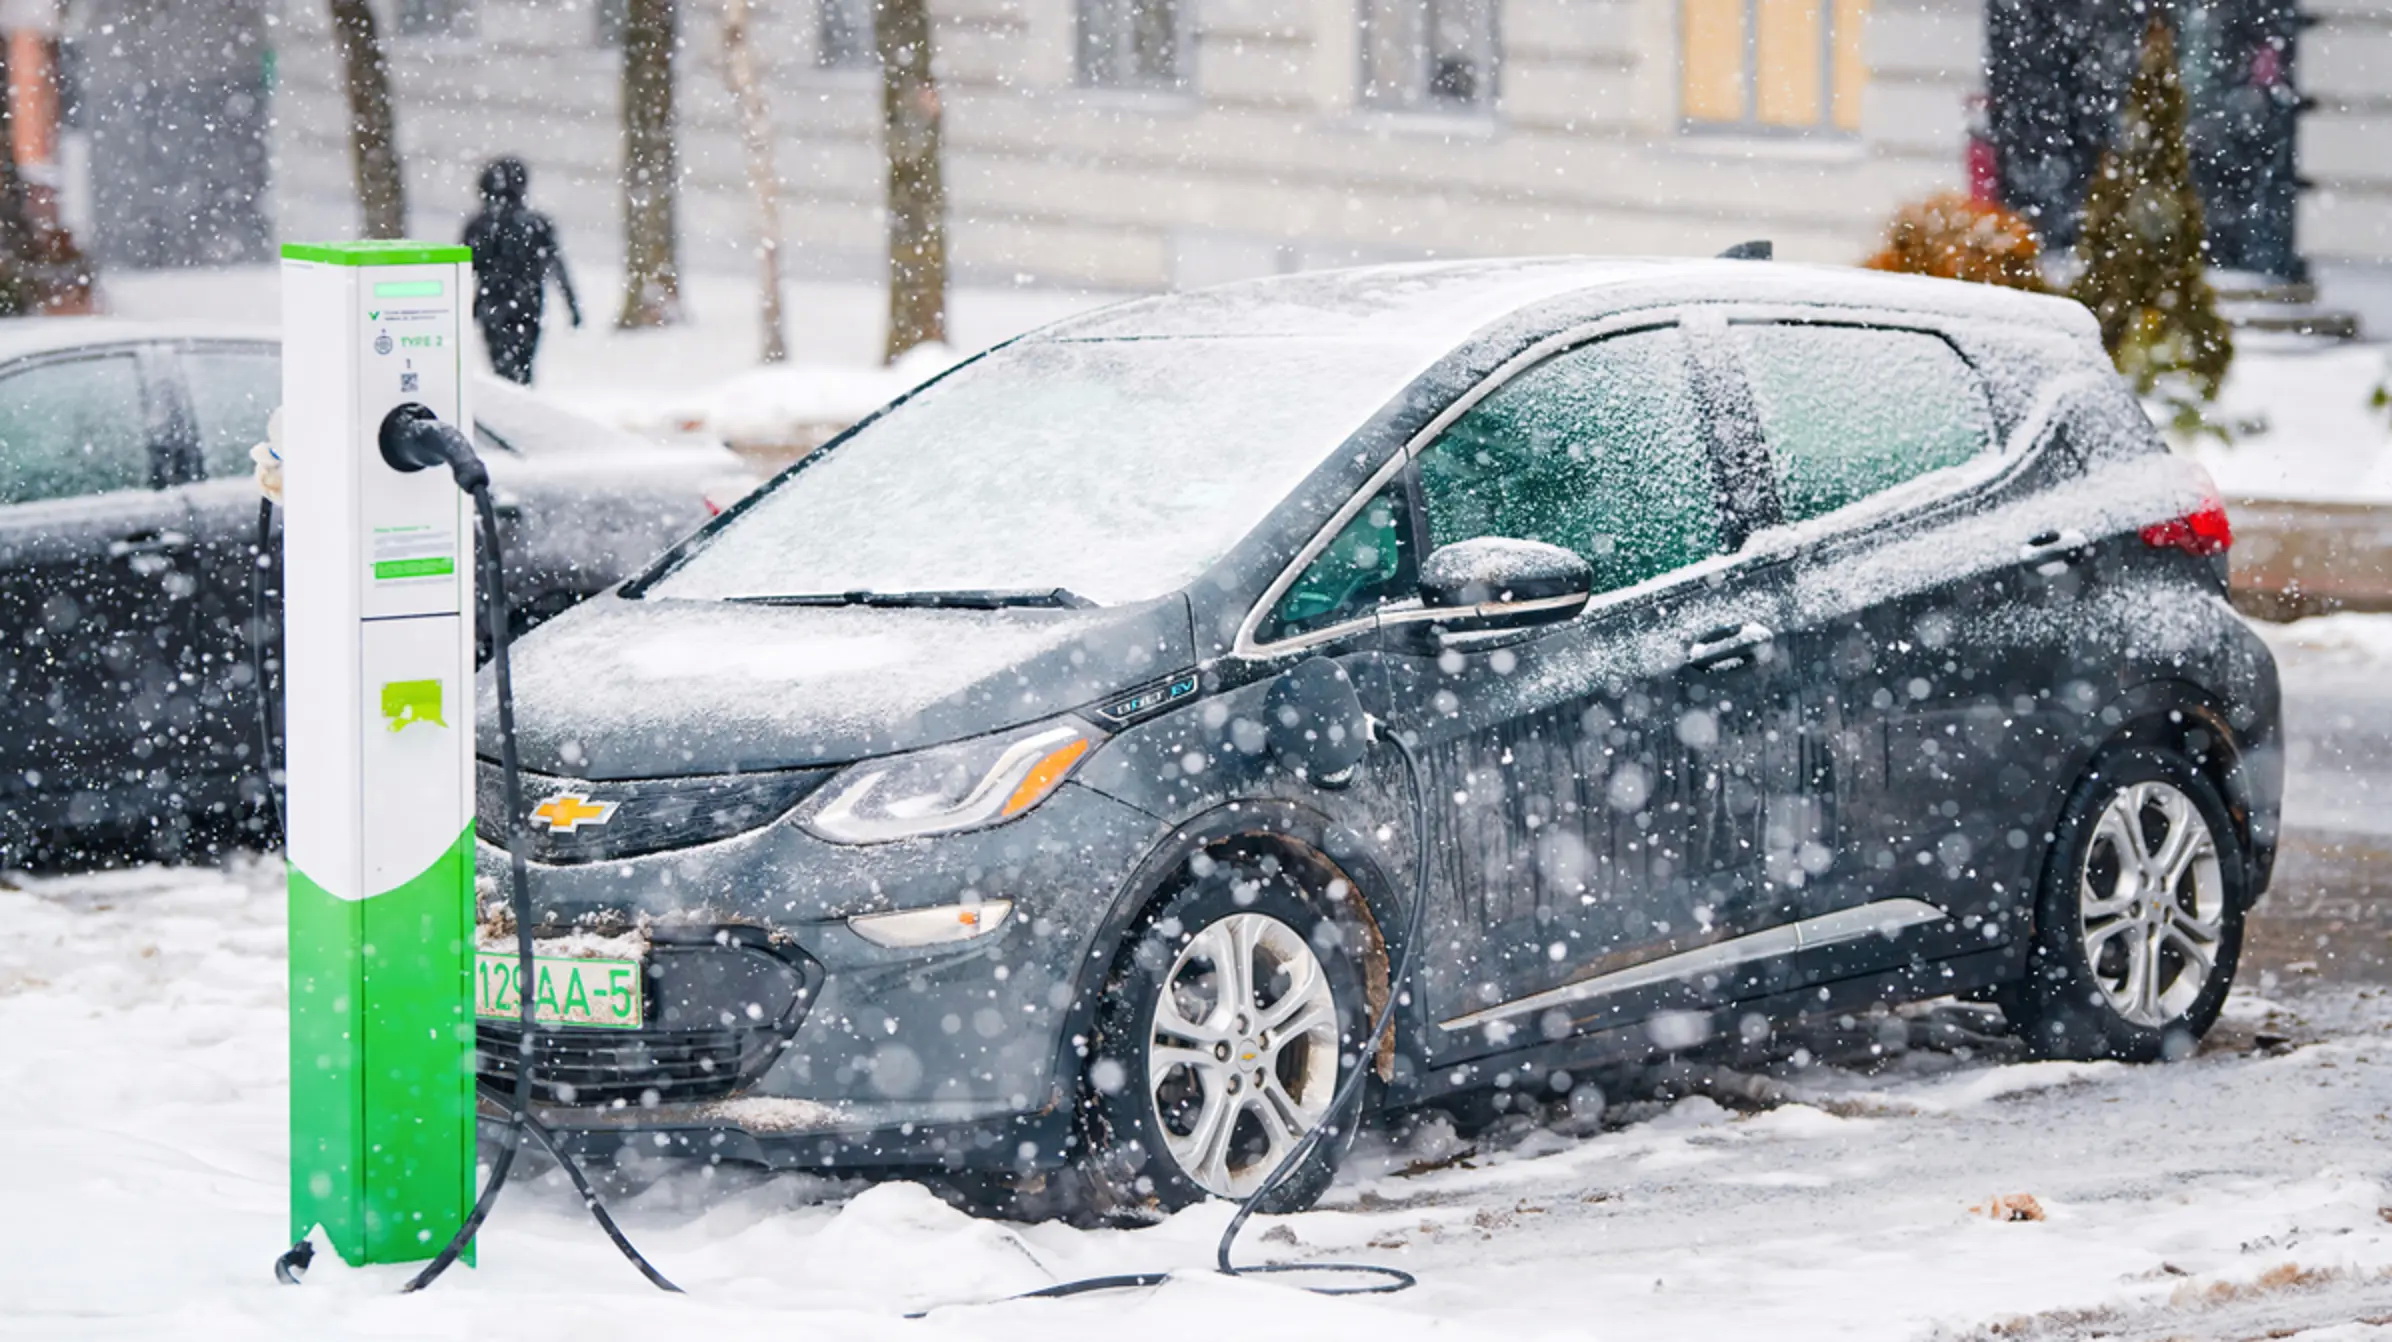 Έως και 32% χειρότερη απόδοση στο κρύο έχουν τα ηλεκτρικά αυτοκίνητα